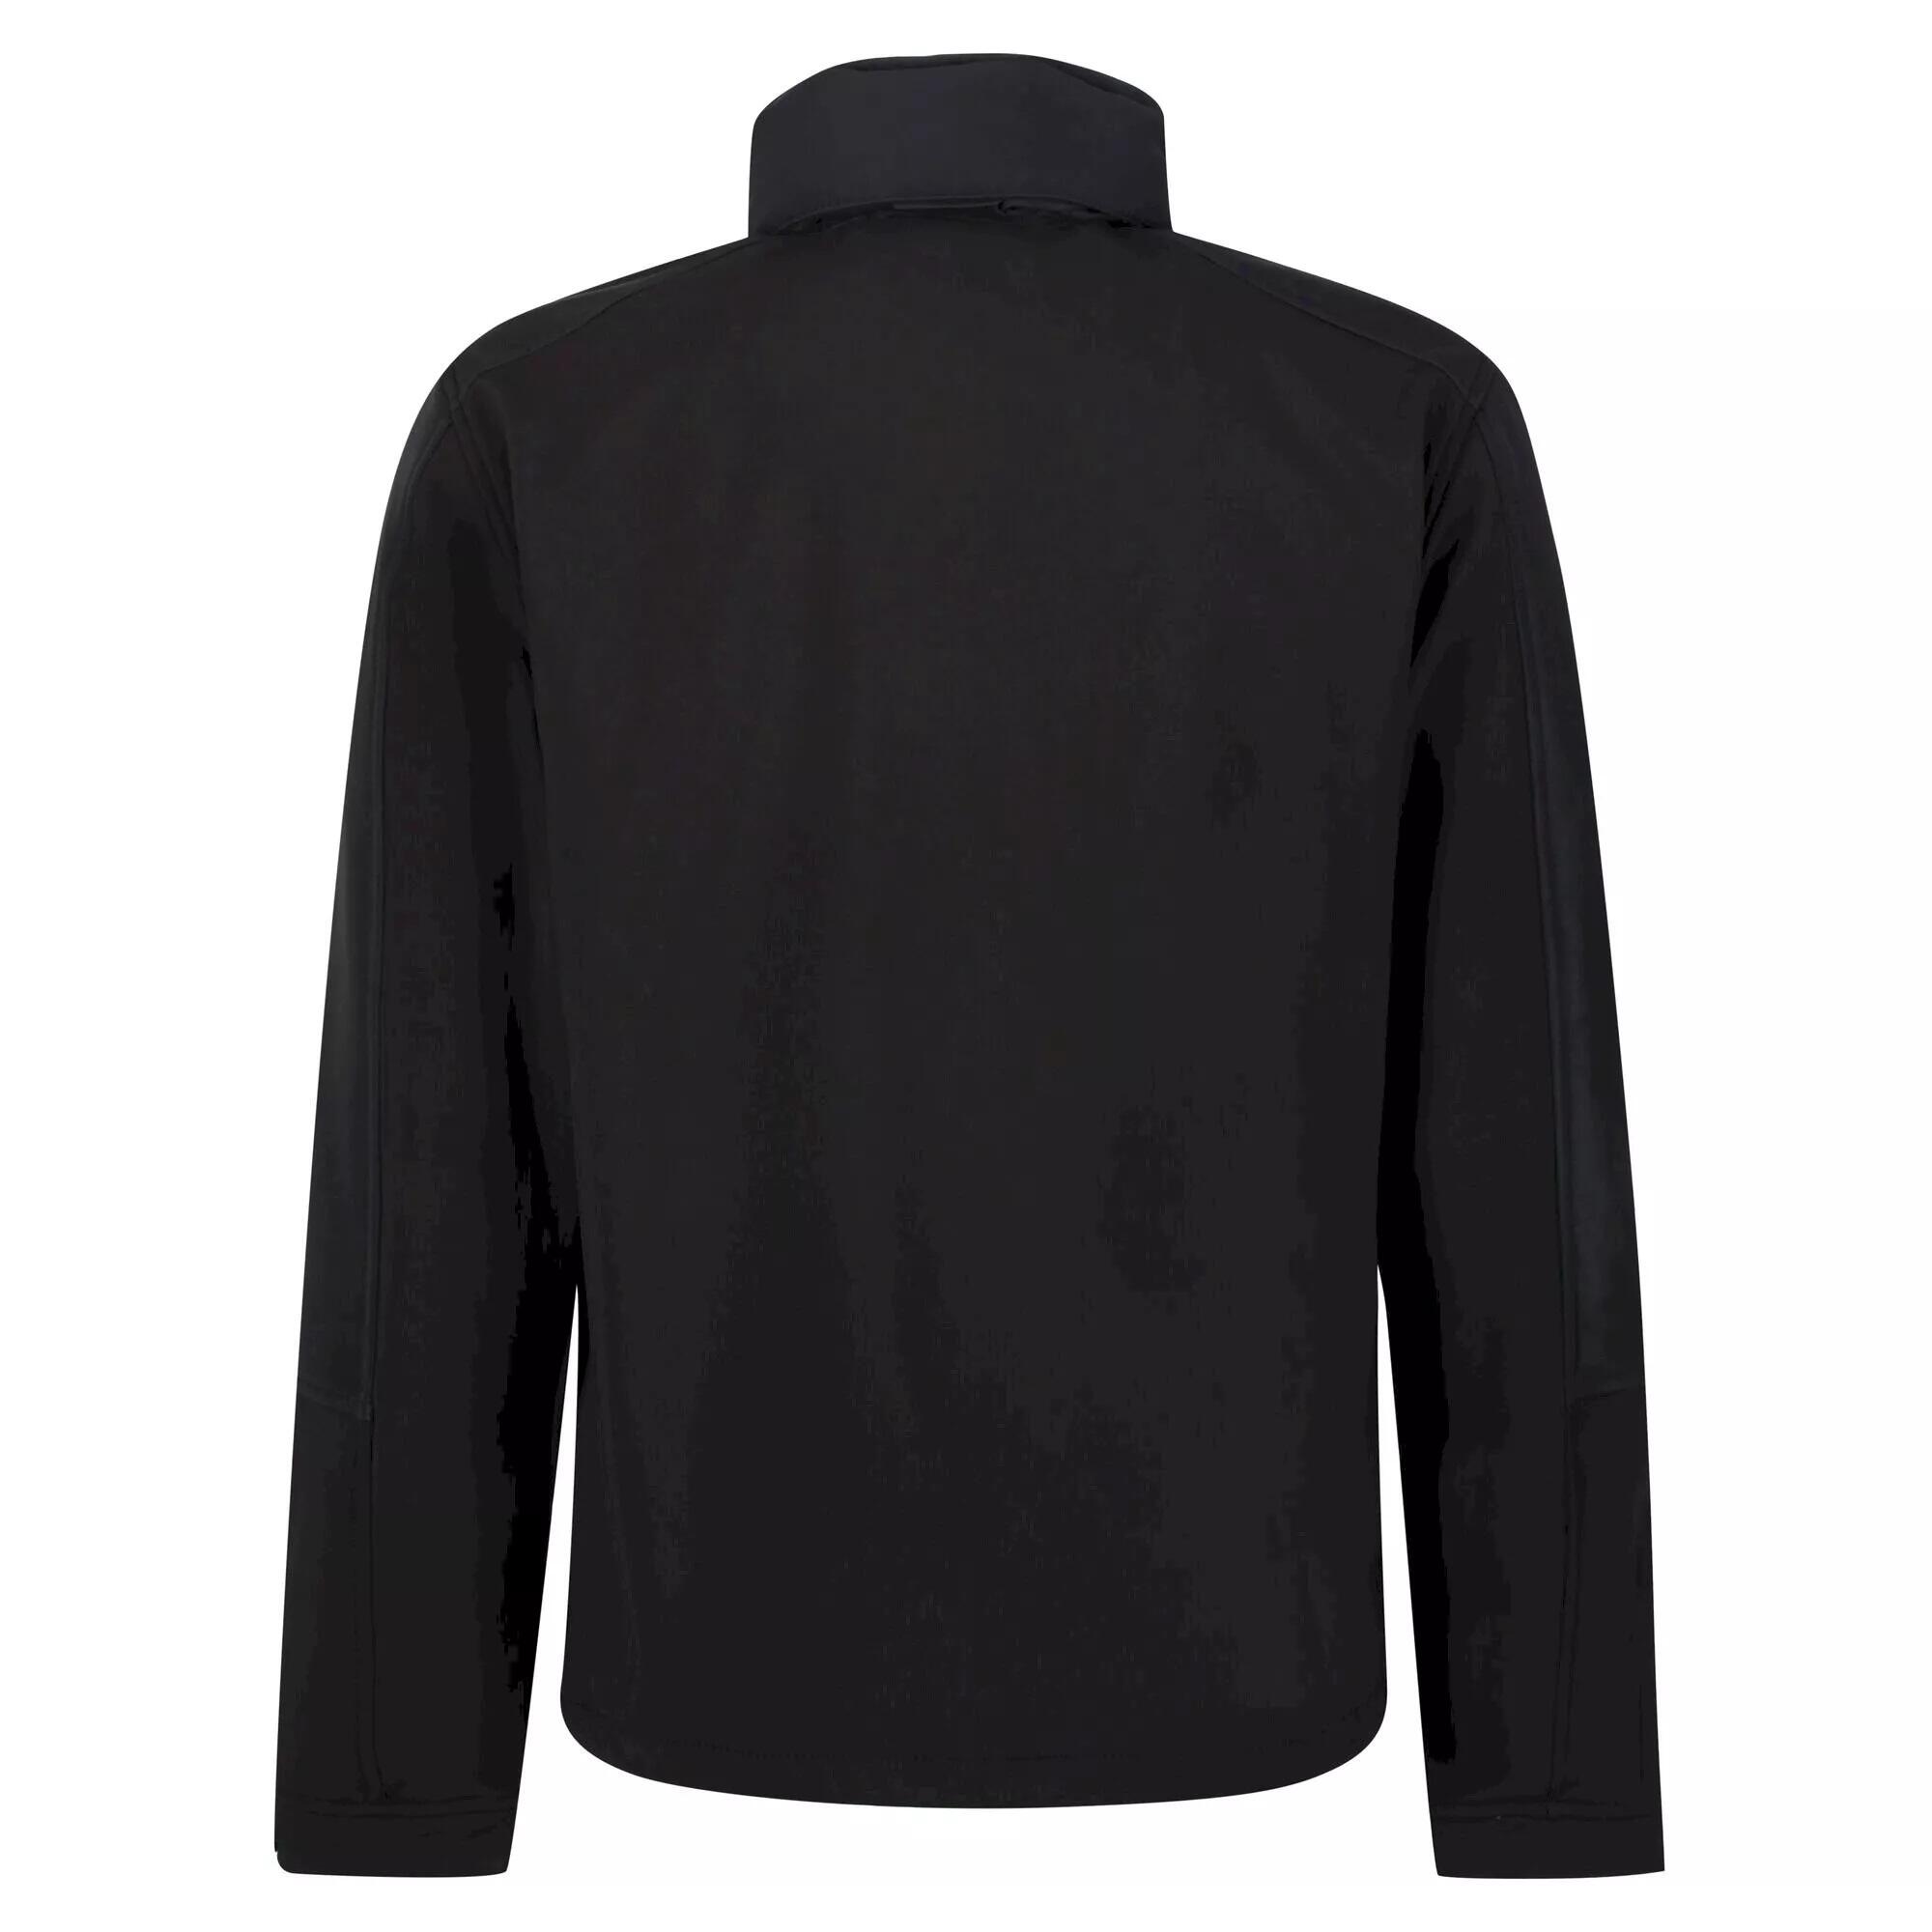 Reid Mens Softshell Wind Resistant Water Repellent Jacket (Black) 2/5